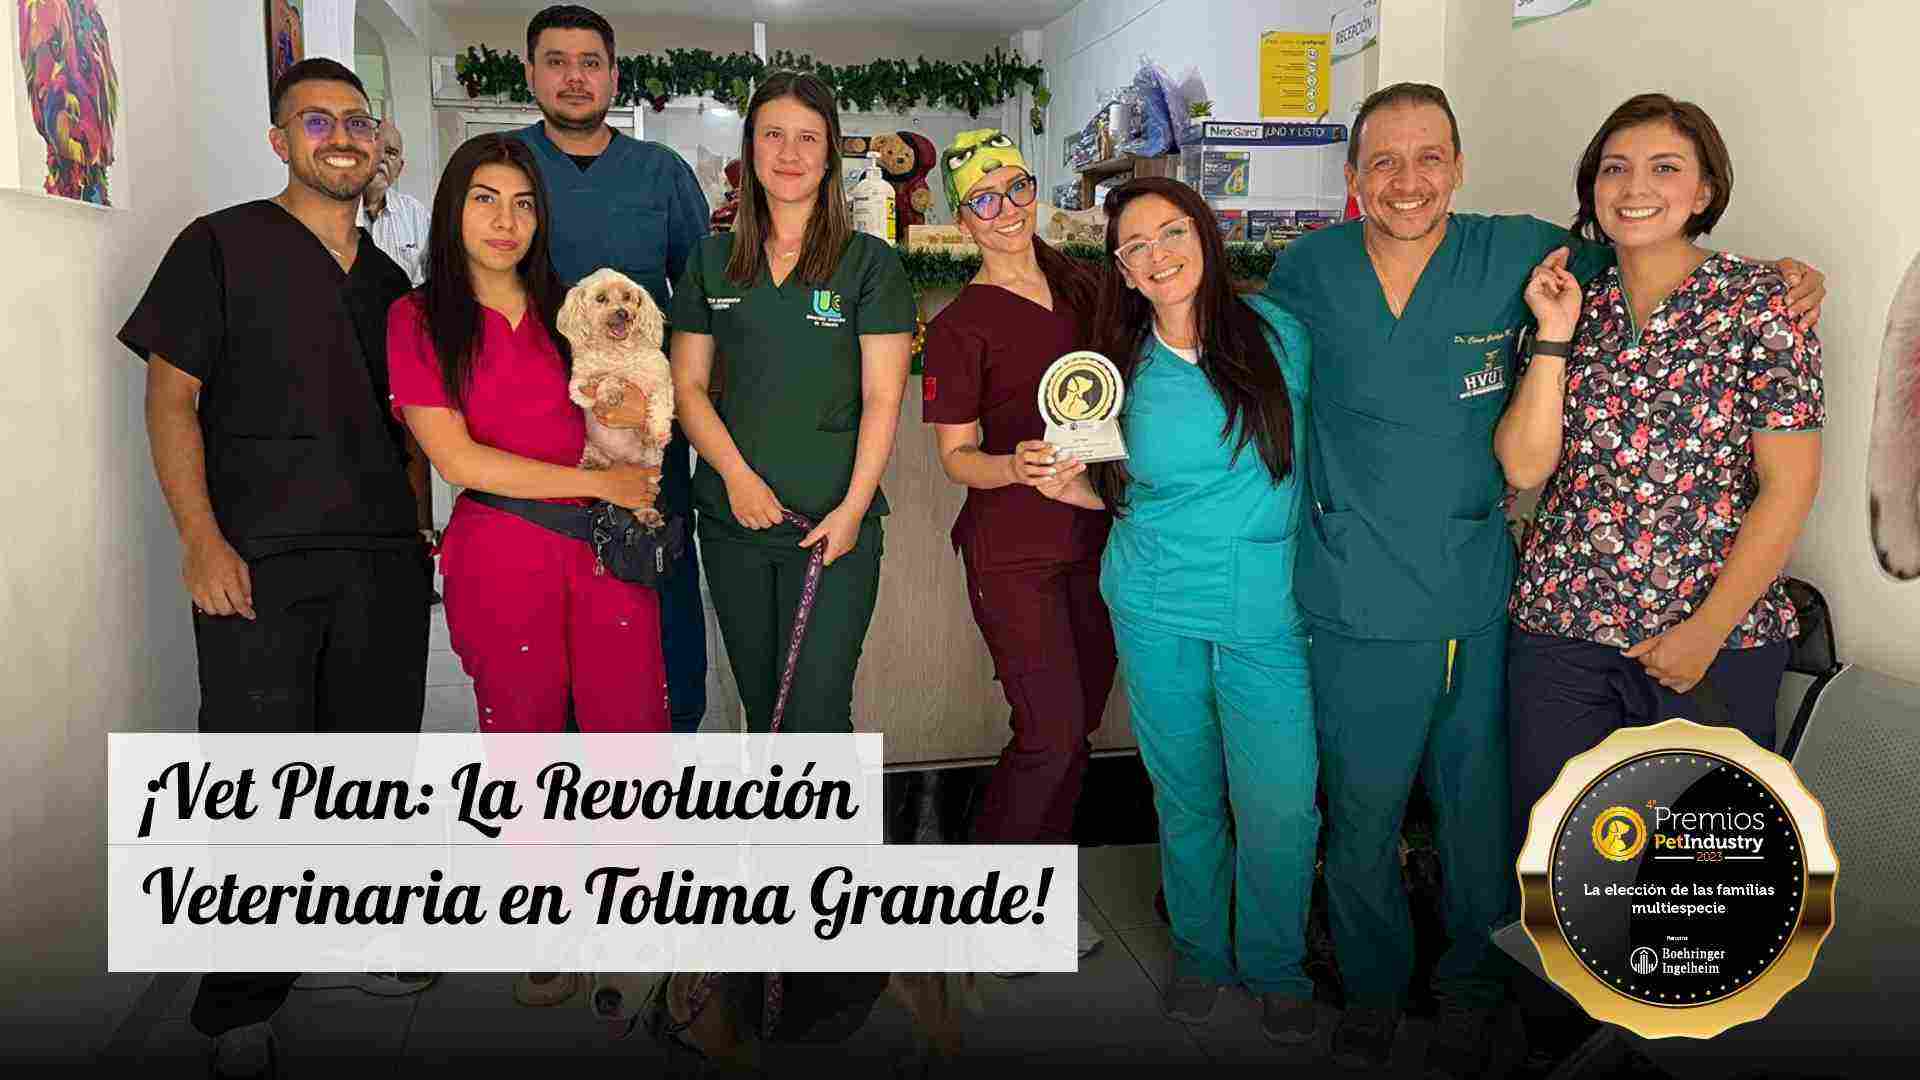 ¡Vet Plan: La Revolución Veterinaria en Tolima Grande!